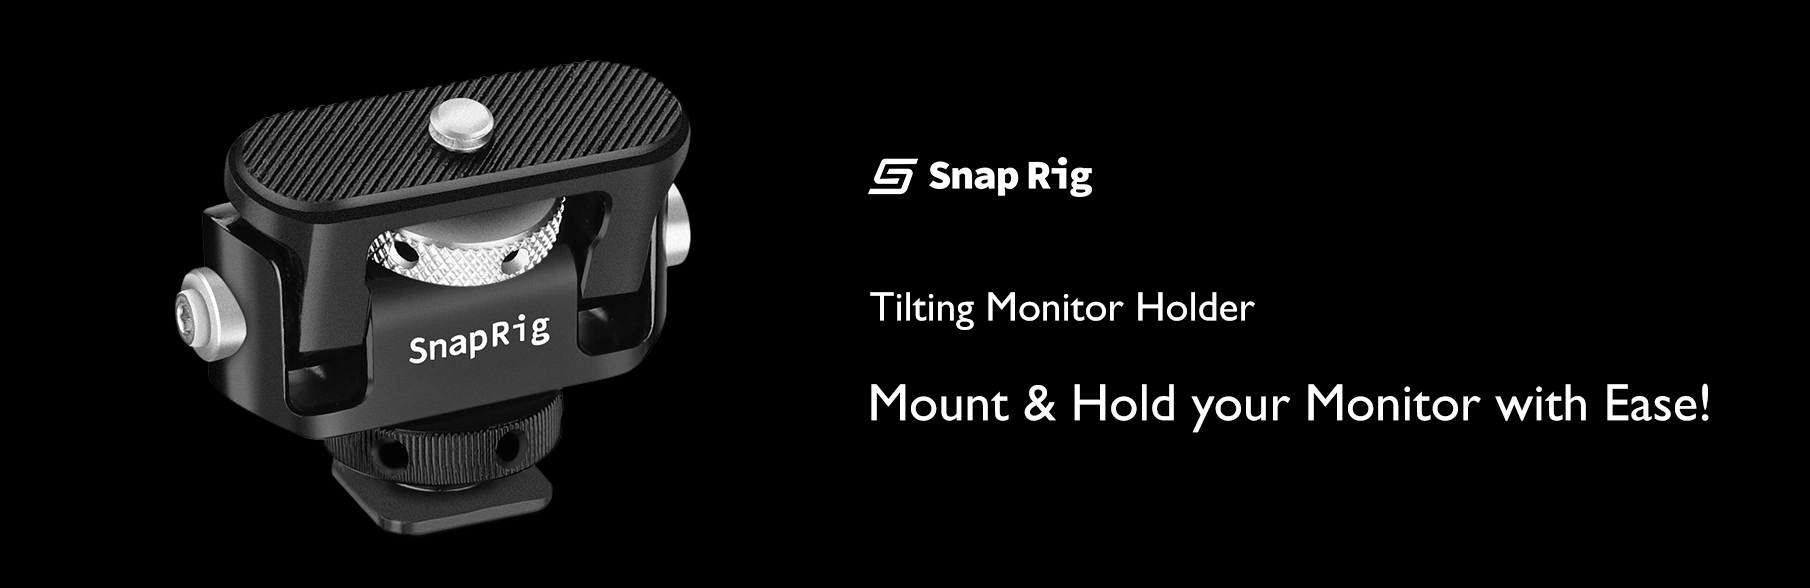 Proaim SnapRig Tilt Monitor Holder with Cold Shoe Mount. CMH231.